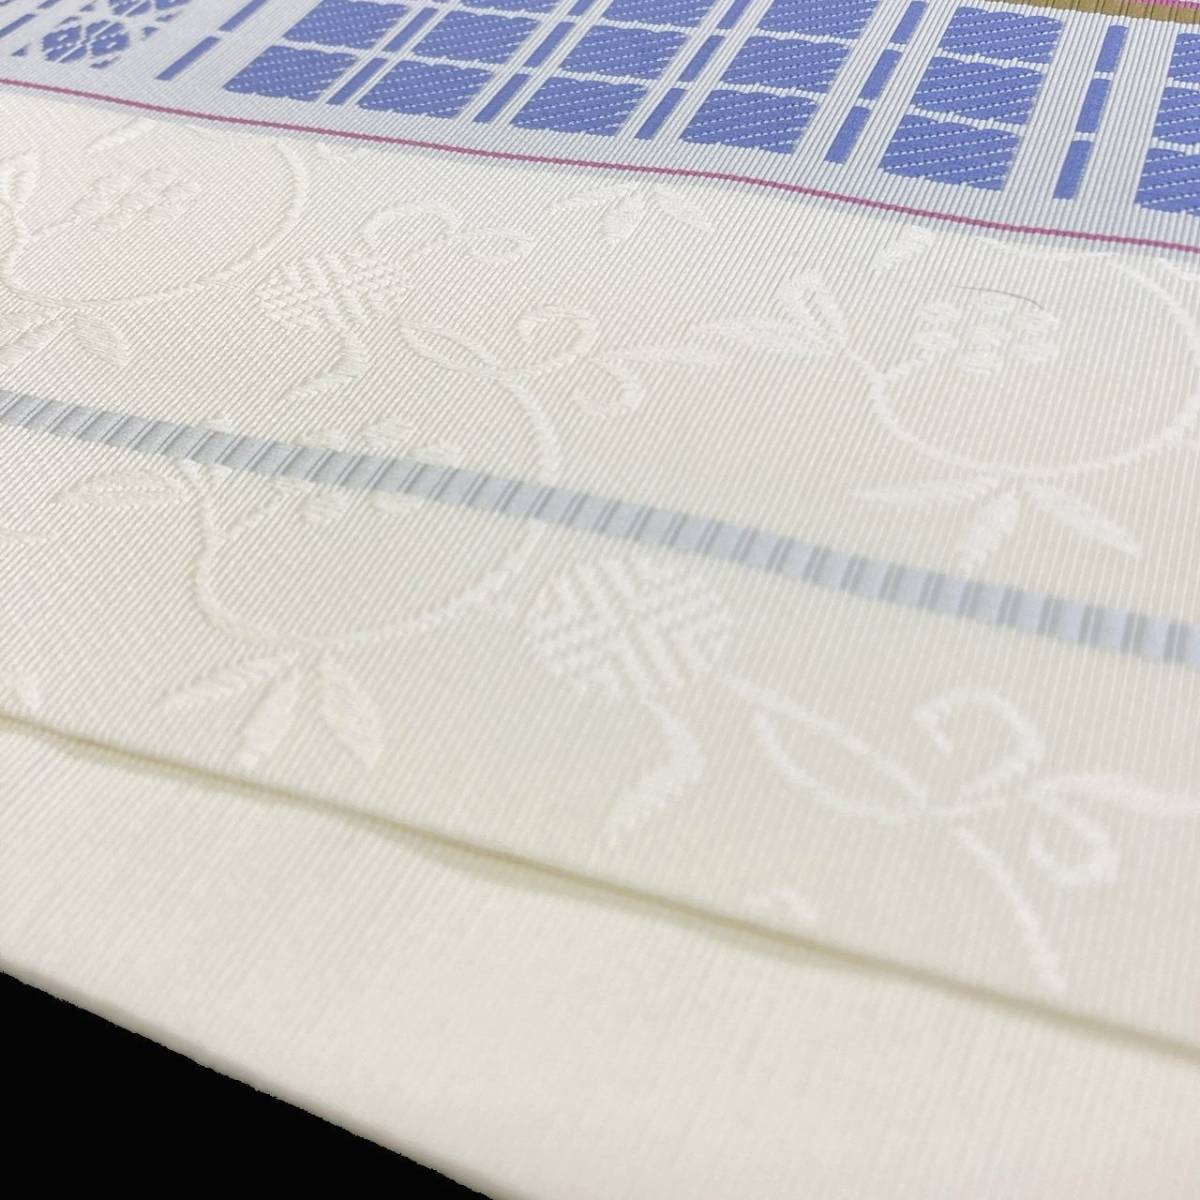 新品 未使用品 博多織 半幅帯 椿 森博多織 正絹 日本製 長さ/3m78cm 